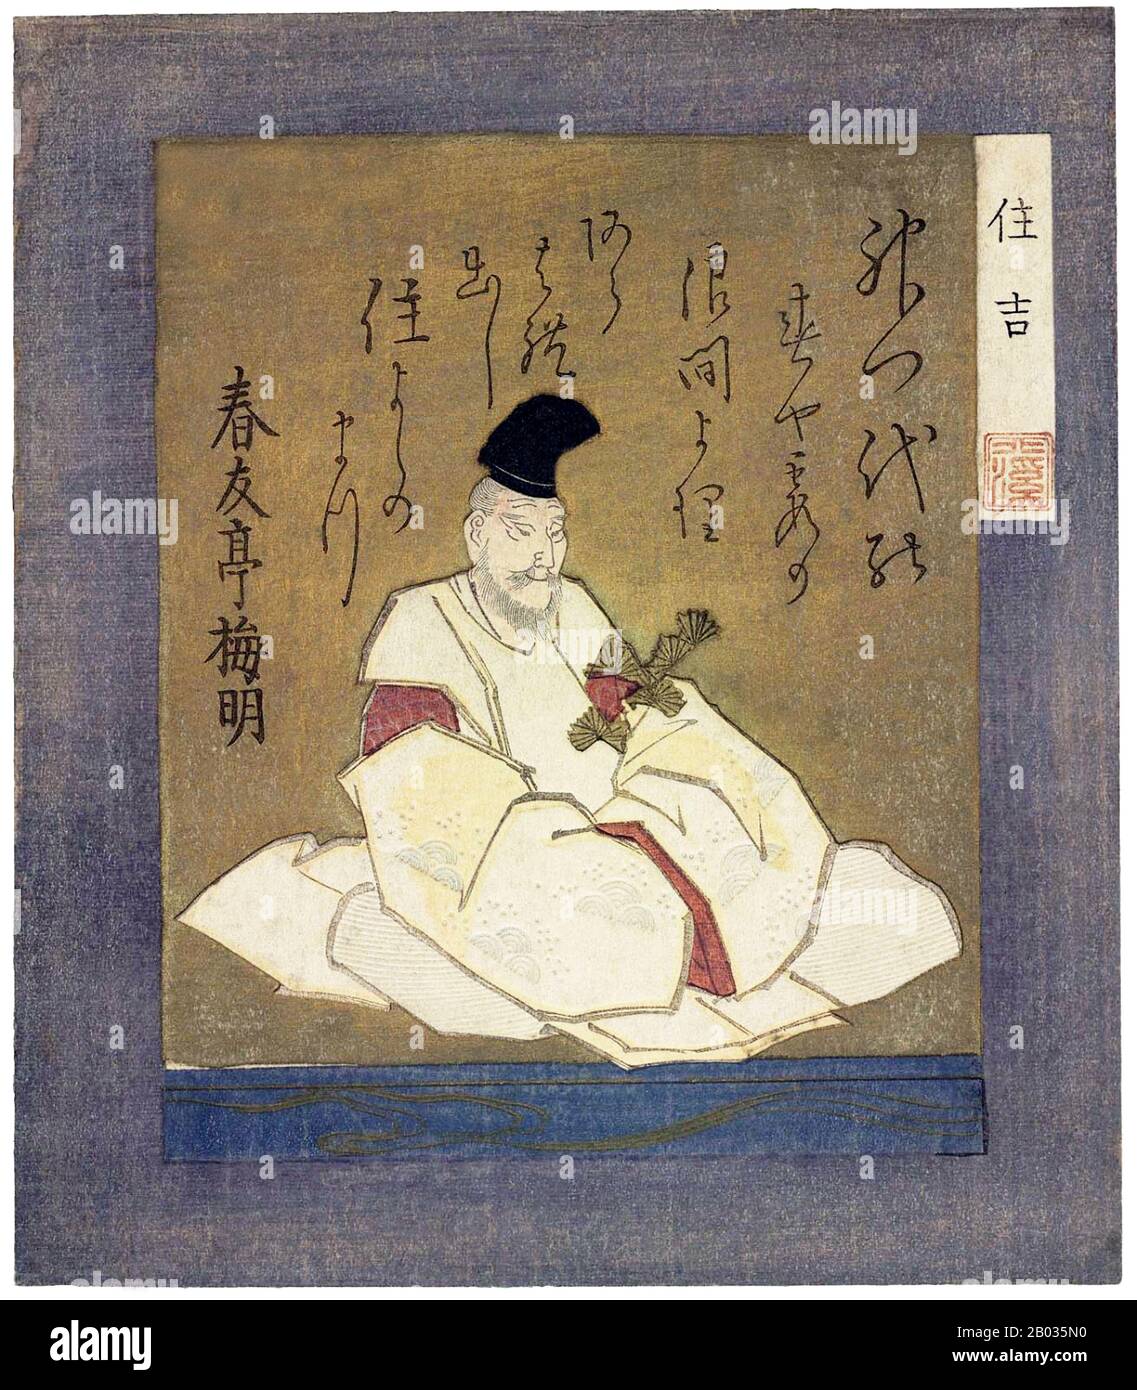 Sumiyoshi sanjin est le nom générique des trois dieux de Shinto Sokotsutsu no o no Mikoto, Nakatsutsu no o no Mikoto et Uwatsutsu no o no Mikoto. Les Sumiyoshi sanjin sont considérés comme les dieux de la mer et de la voile. Ils sont parfois appelés Sumiyoshi daijin. Totoya Hokkei était un auteur japonais de printMaker et illustrateur de livre. Il a d'abord étudié la peinture avec Kano Yosen (1735-1808), le chef de la branche Kobikicho de l'école Kano et okaeshi (peintre officiel) au shogunat Tokugawa. Avec Teisai Hokuba (1771-1844), Hokkei était l'un des meilleurs étudiants de Katsushika Hokusai Banque D'Images